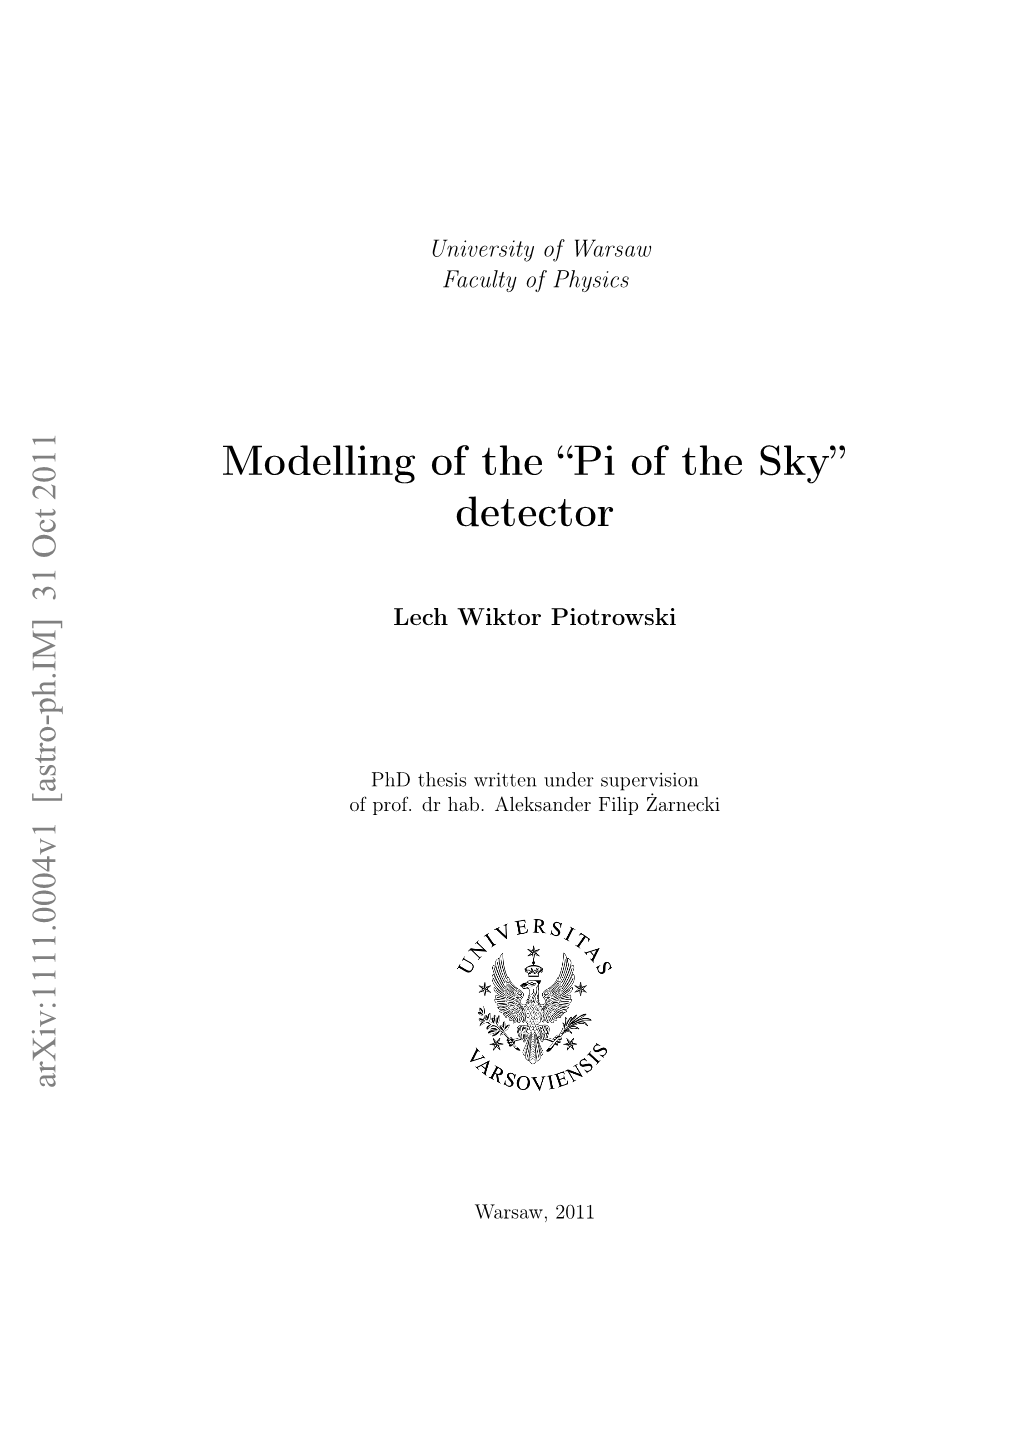 Pi of the Sky” Detector